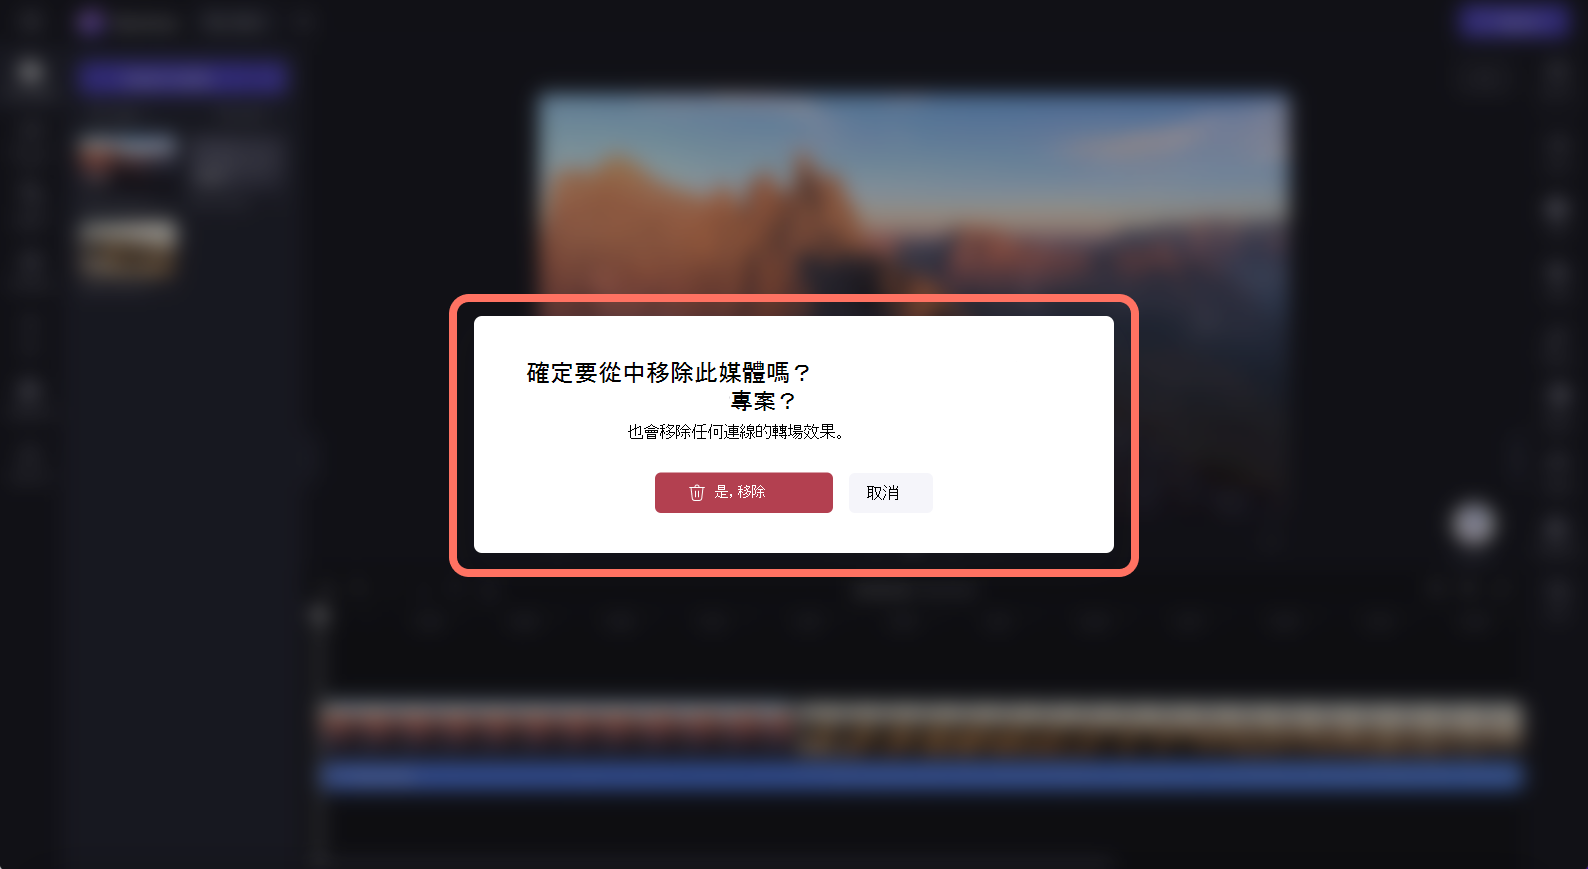 用戶預覽刪除快顯視窗的影像。